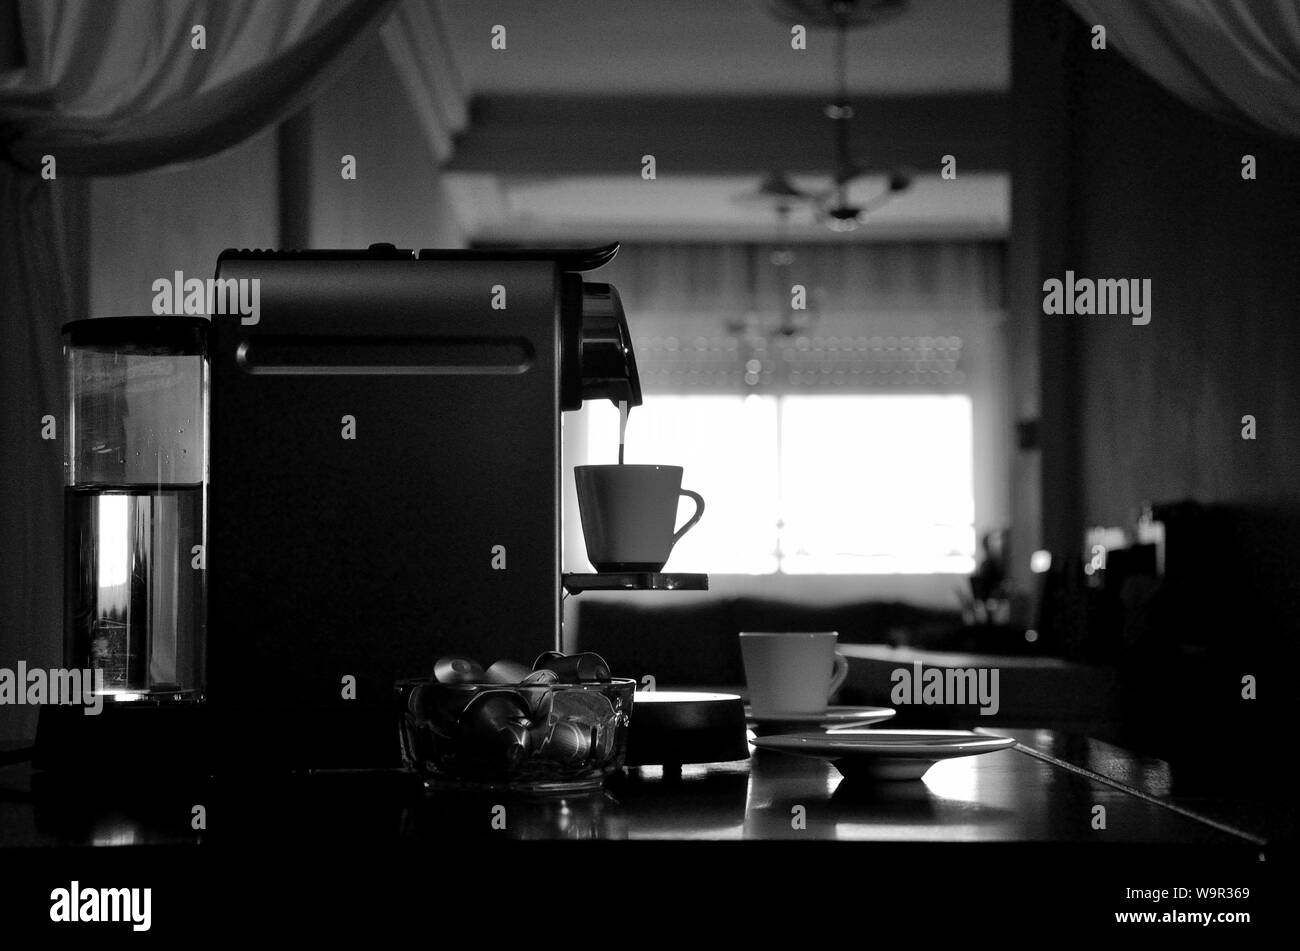 Espressomaschine in Silhouette, Ansicht der Sätze beim Befüllen Kaffeetasse. Stockfoto